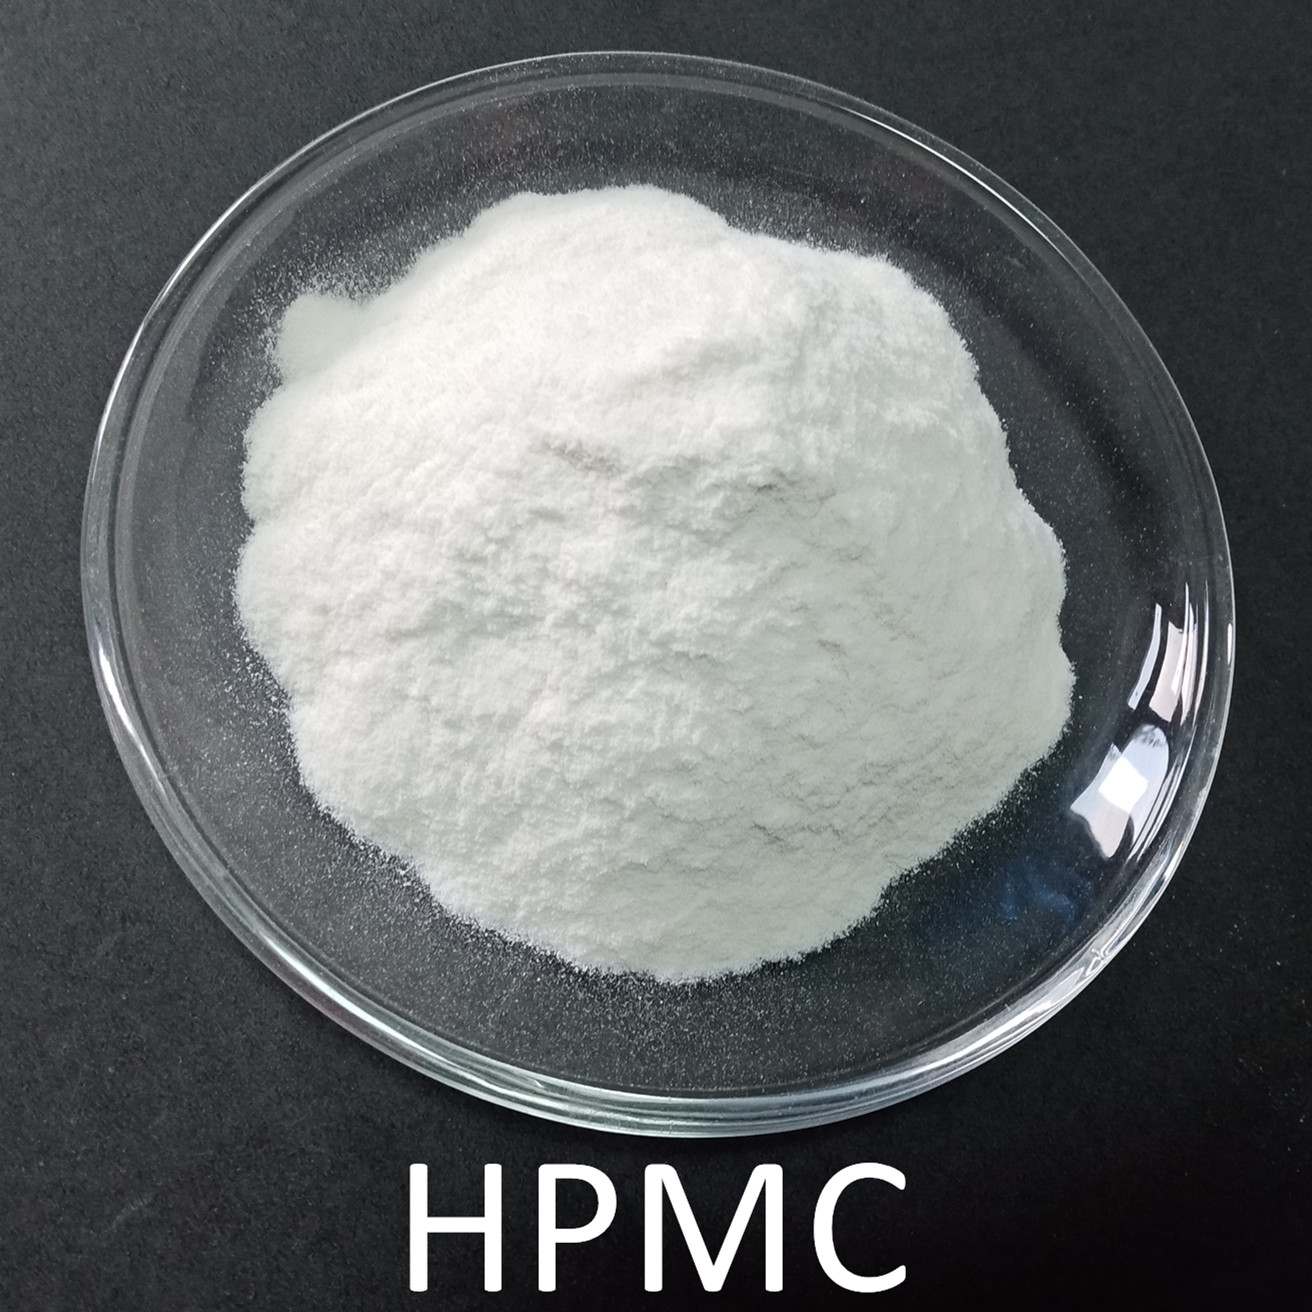 HPMC హైడ్రాక్సీప్రోపైల్ మిథైల్ సెల్యులోజ్